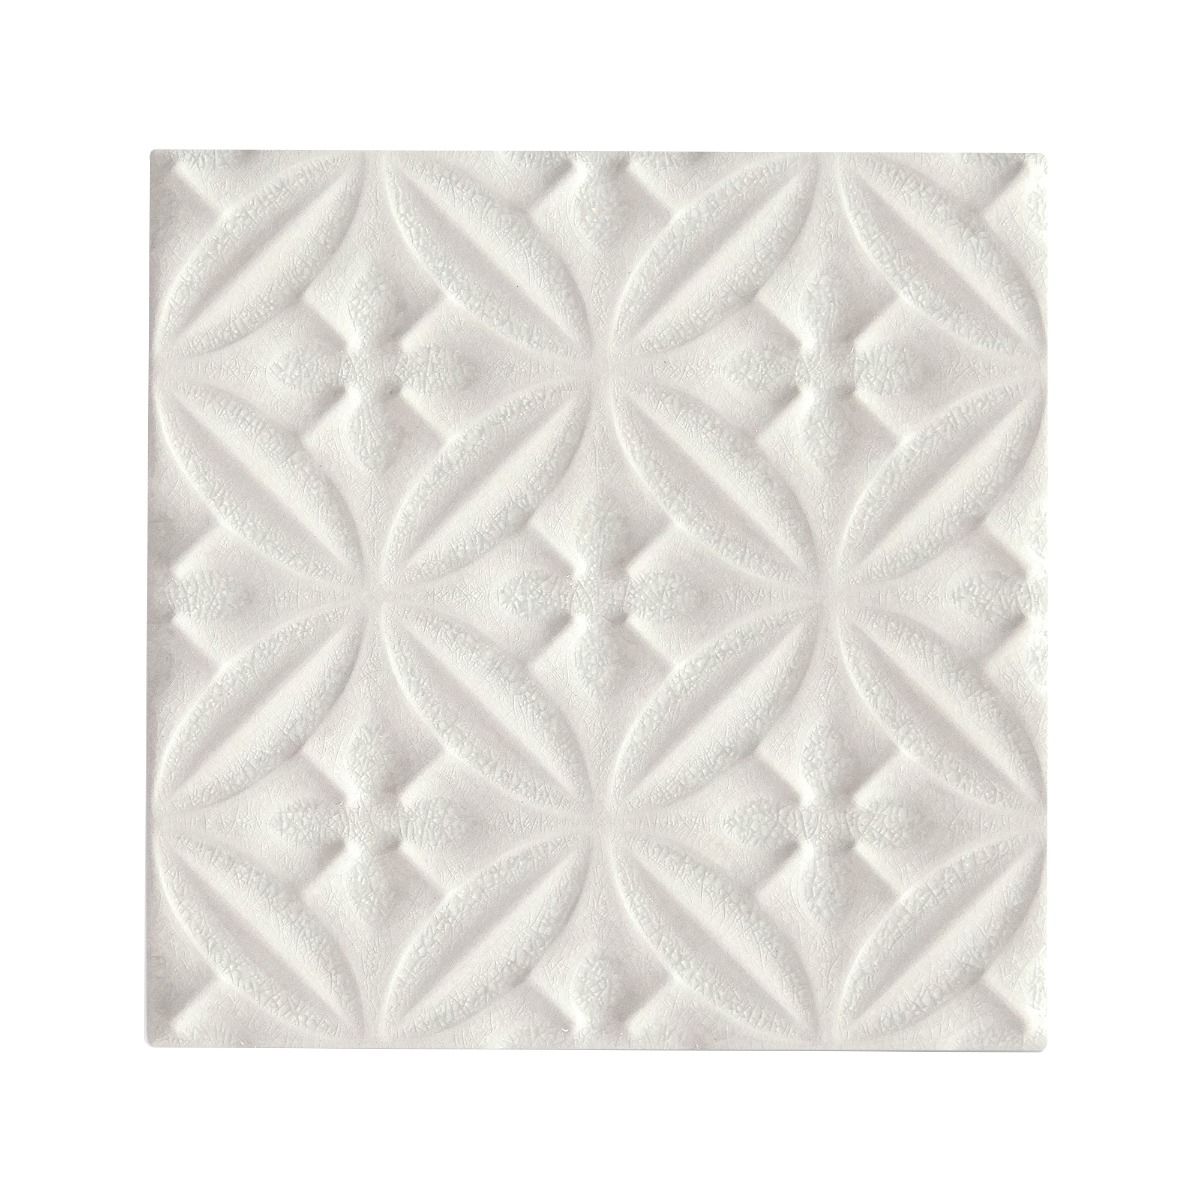 Alhambra White Decor 15 x 15